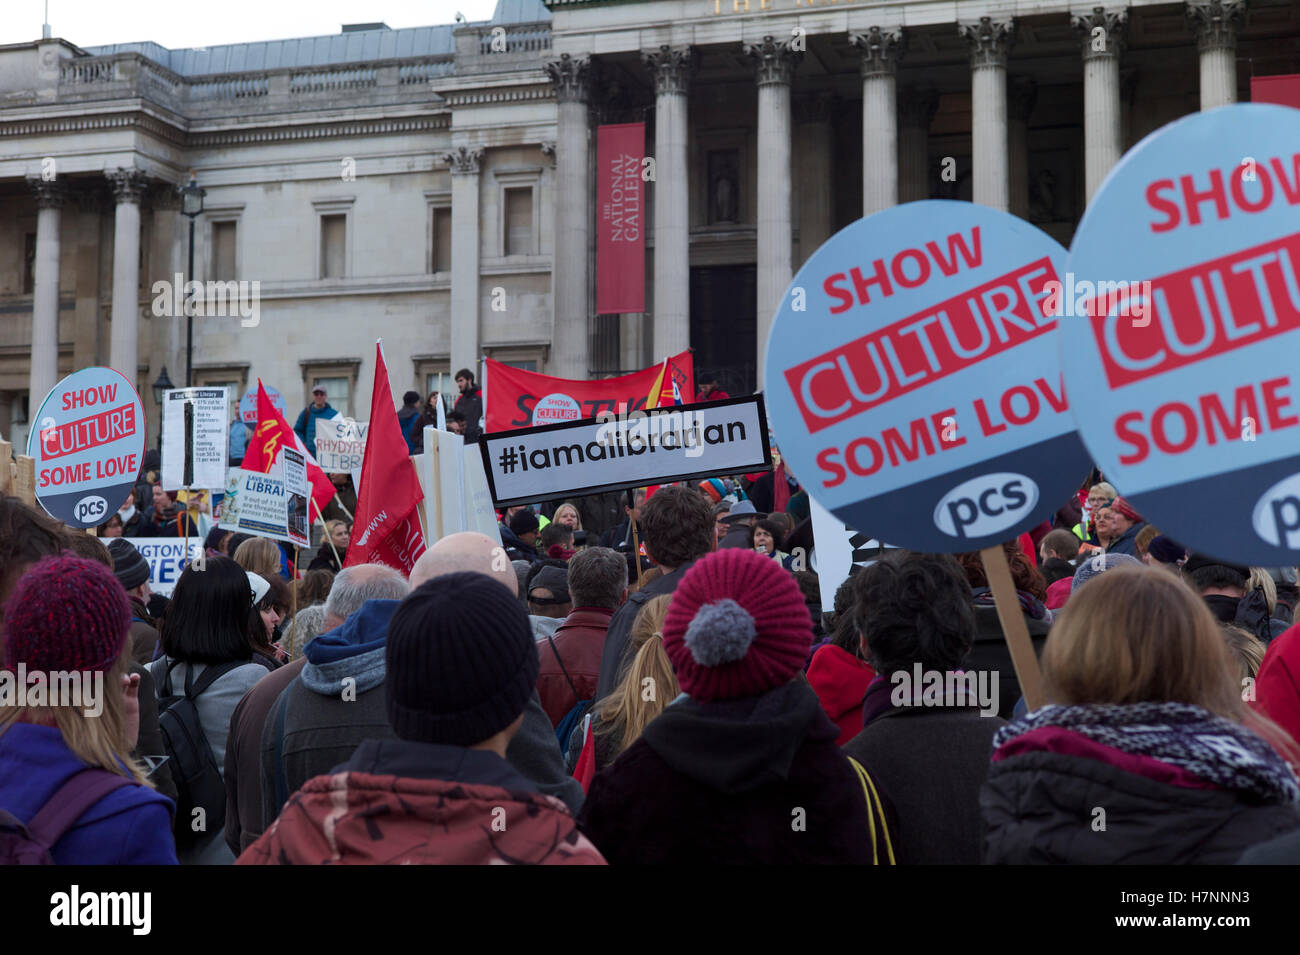 Speichern Sie unsere Bibliotheken-Demonstration am Trafalgar Square in London Stockfoto